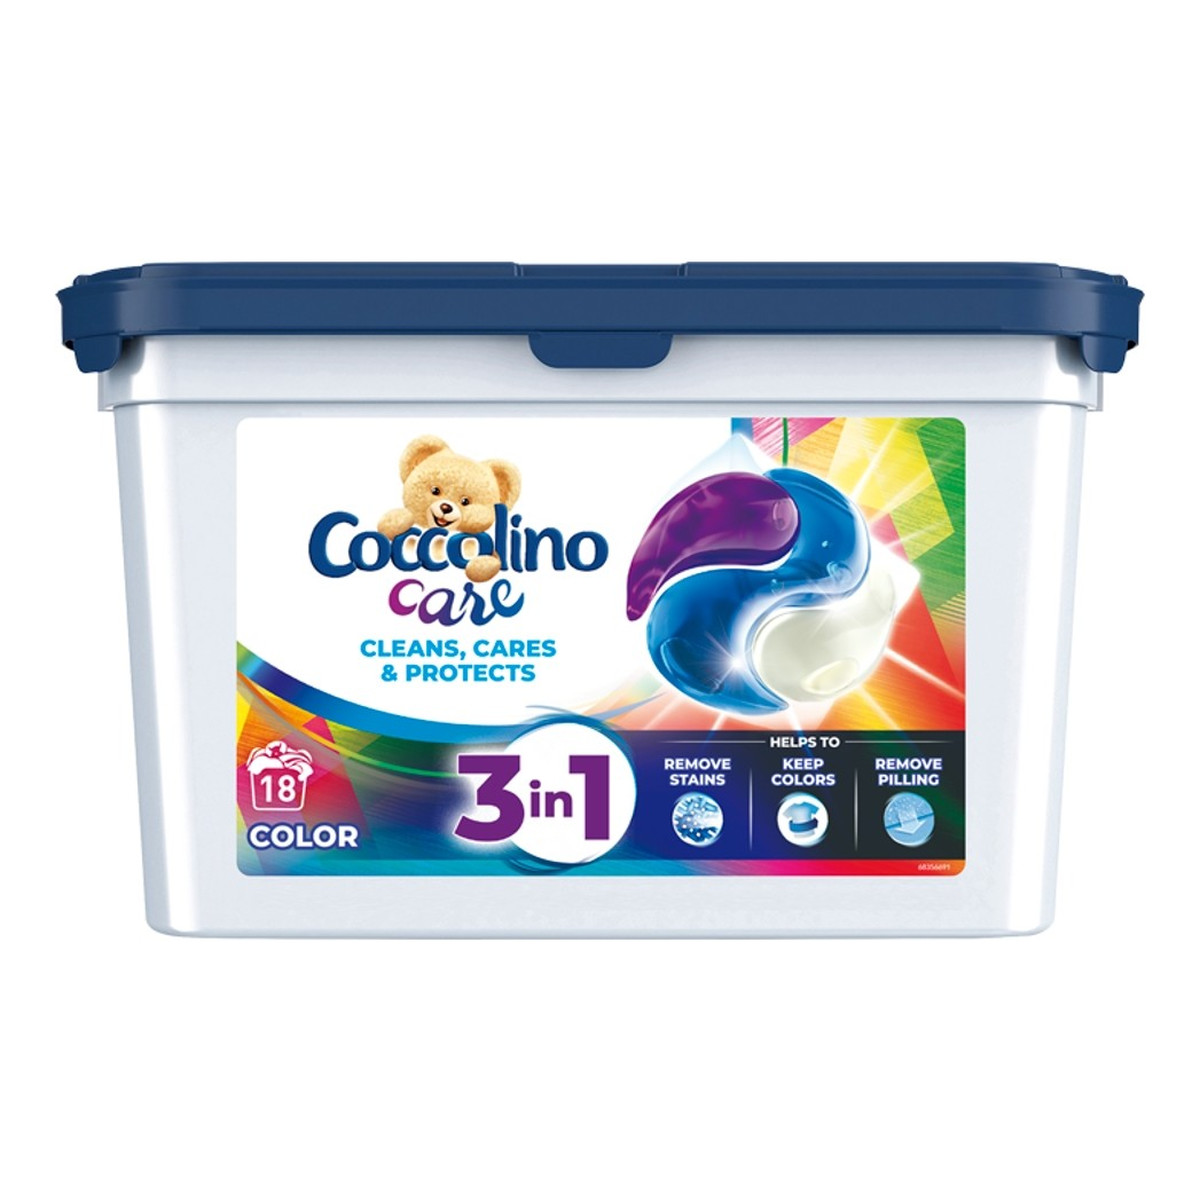 Coccolino Care Caps Kapsułki do prania 3in1 Color (18 prań) 486g